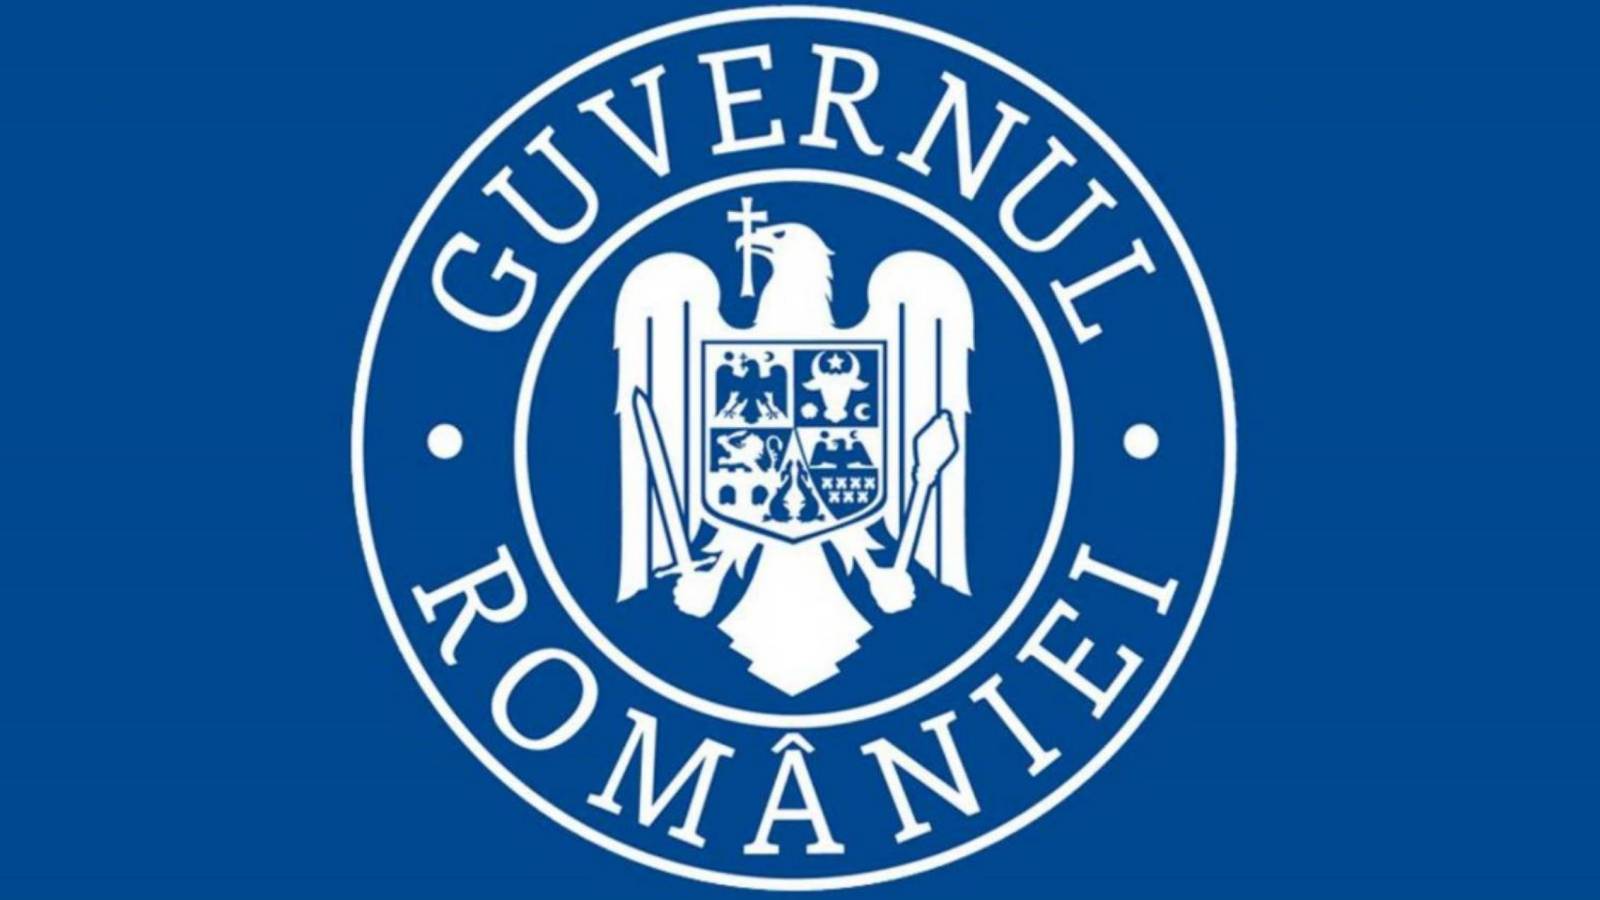 The Romanian government vigilance